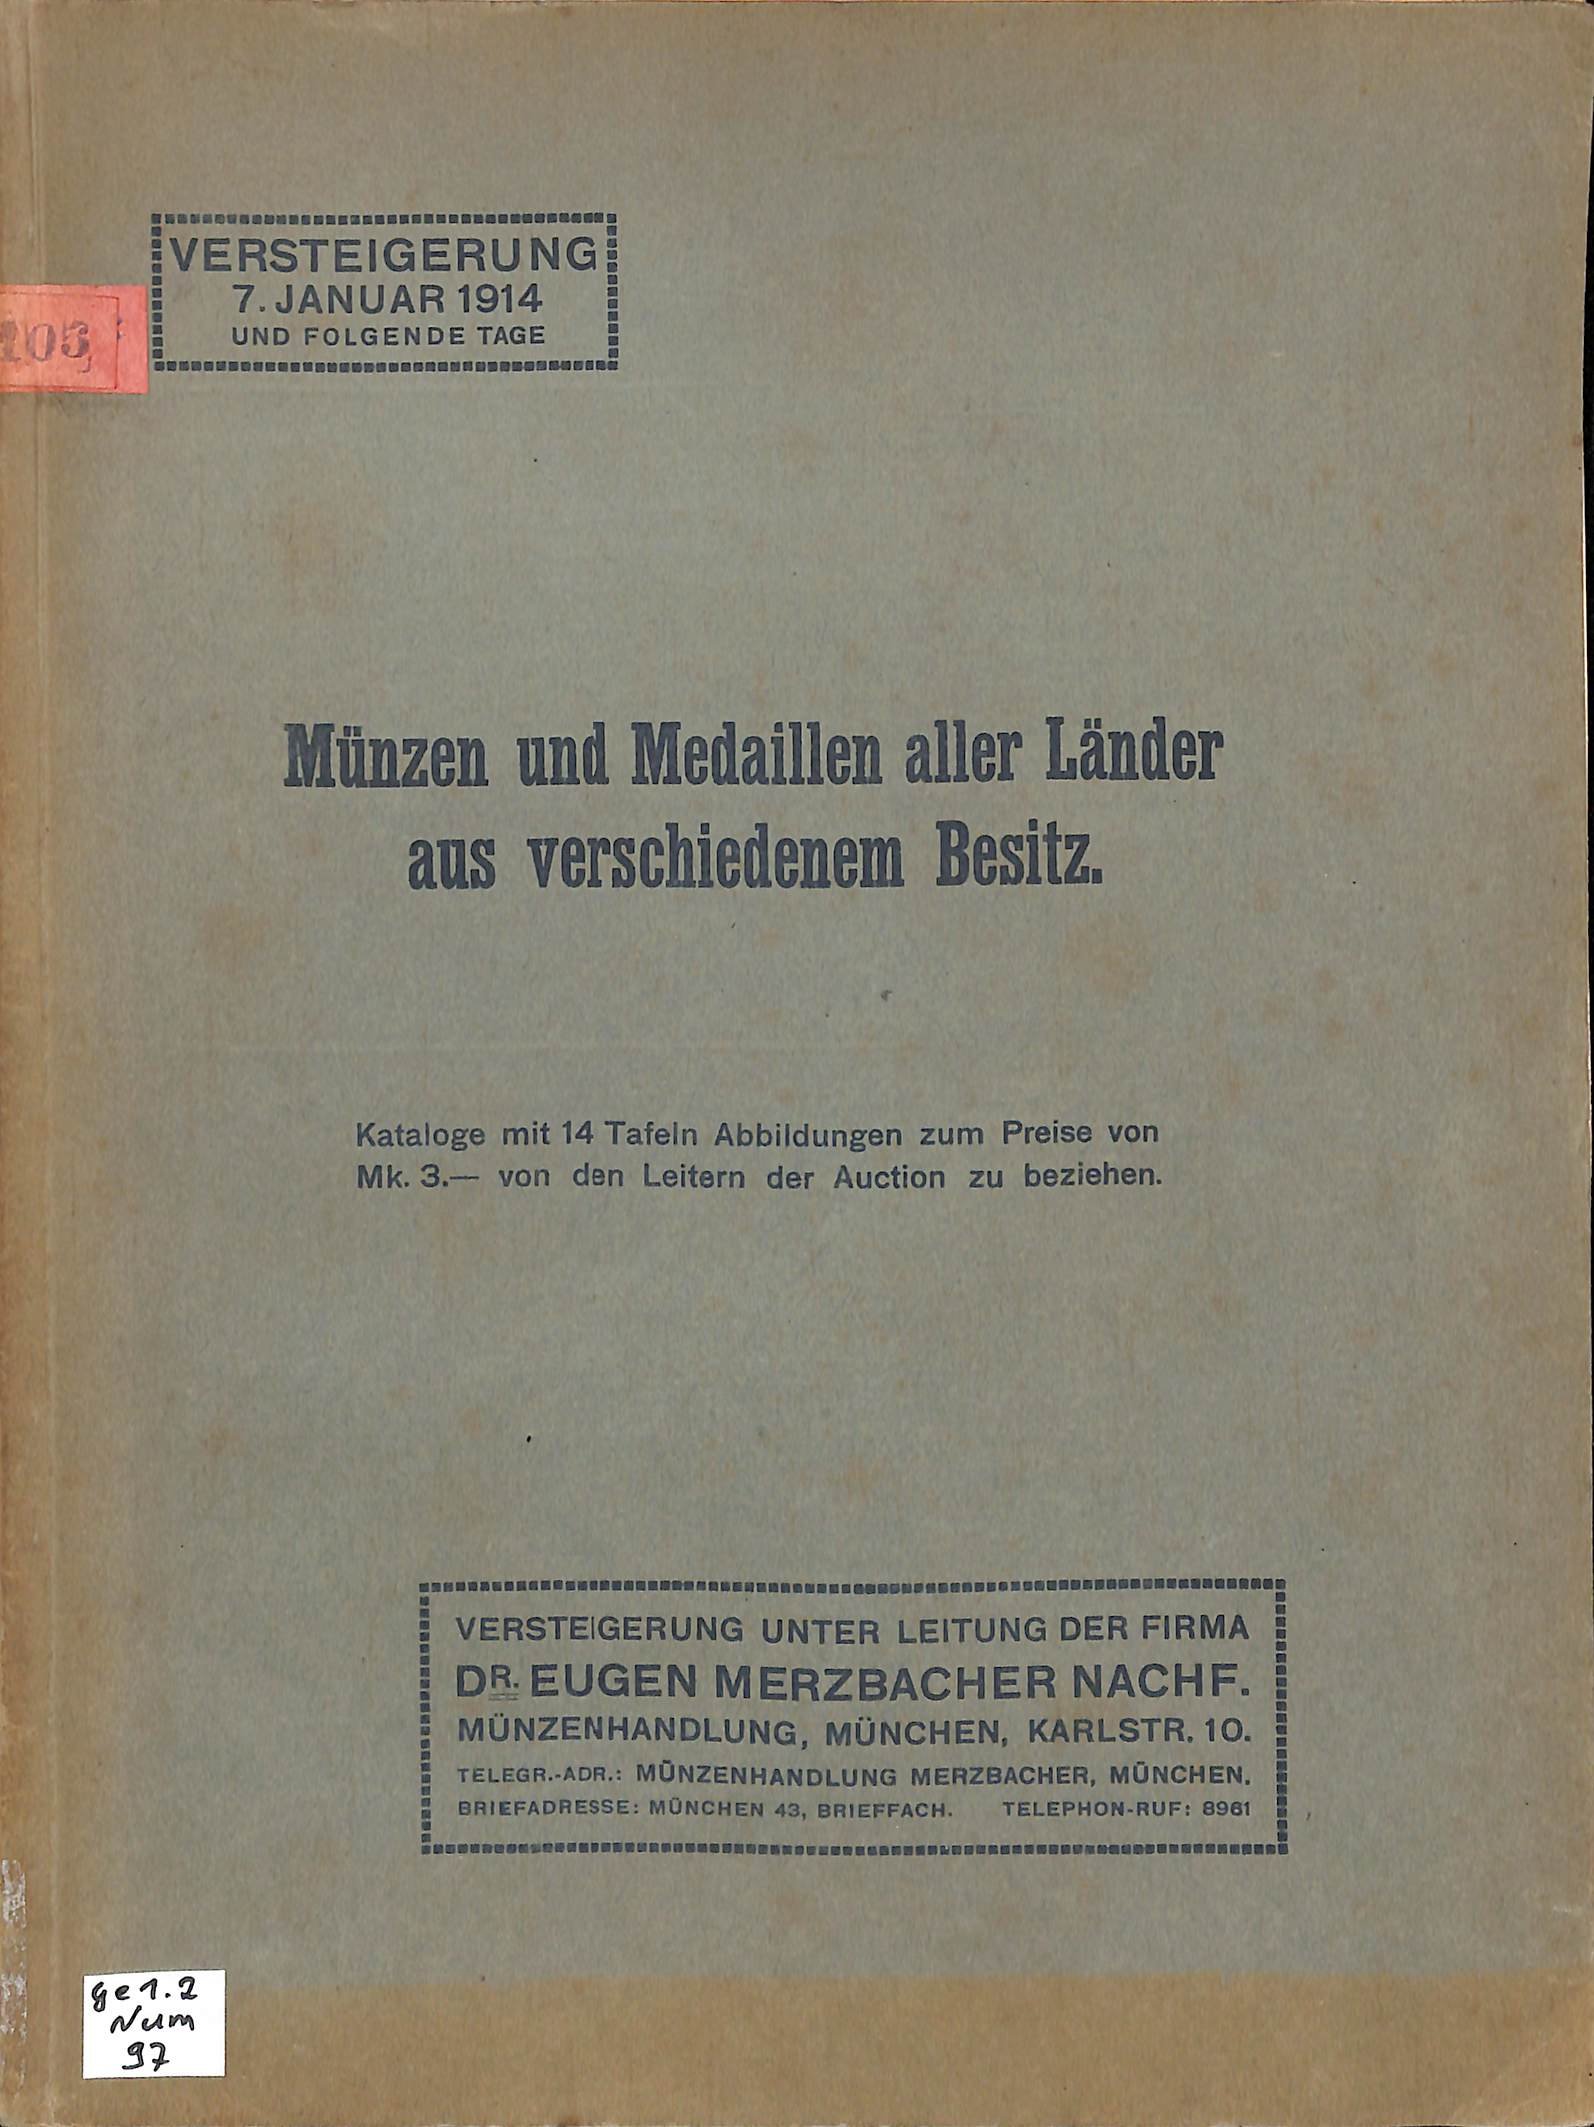 Dr. Eugen Merzbacher Nachf. Münzhandlung, Versteigerung 7. Januar 1914 (Heimatwelten Zwönitz CC BY-NC-SA)